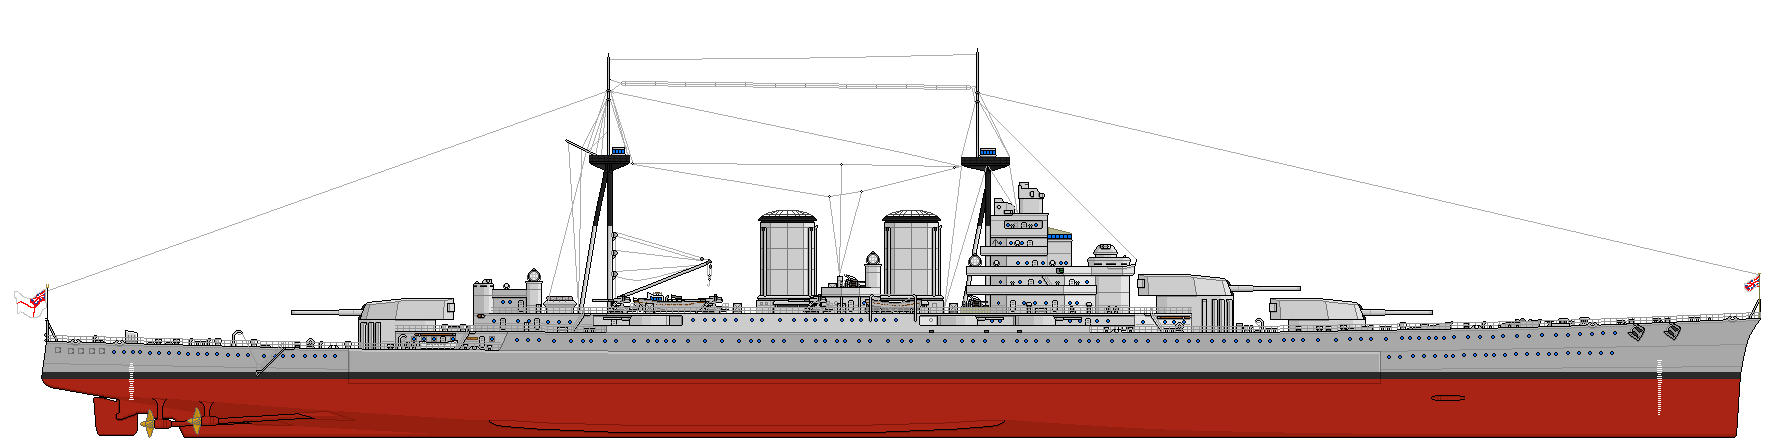 纳尔逊级战列巡洋舰设计图